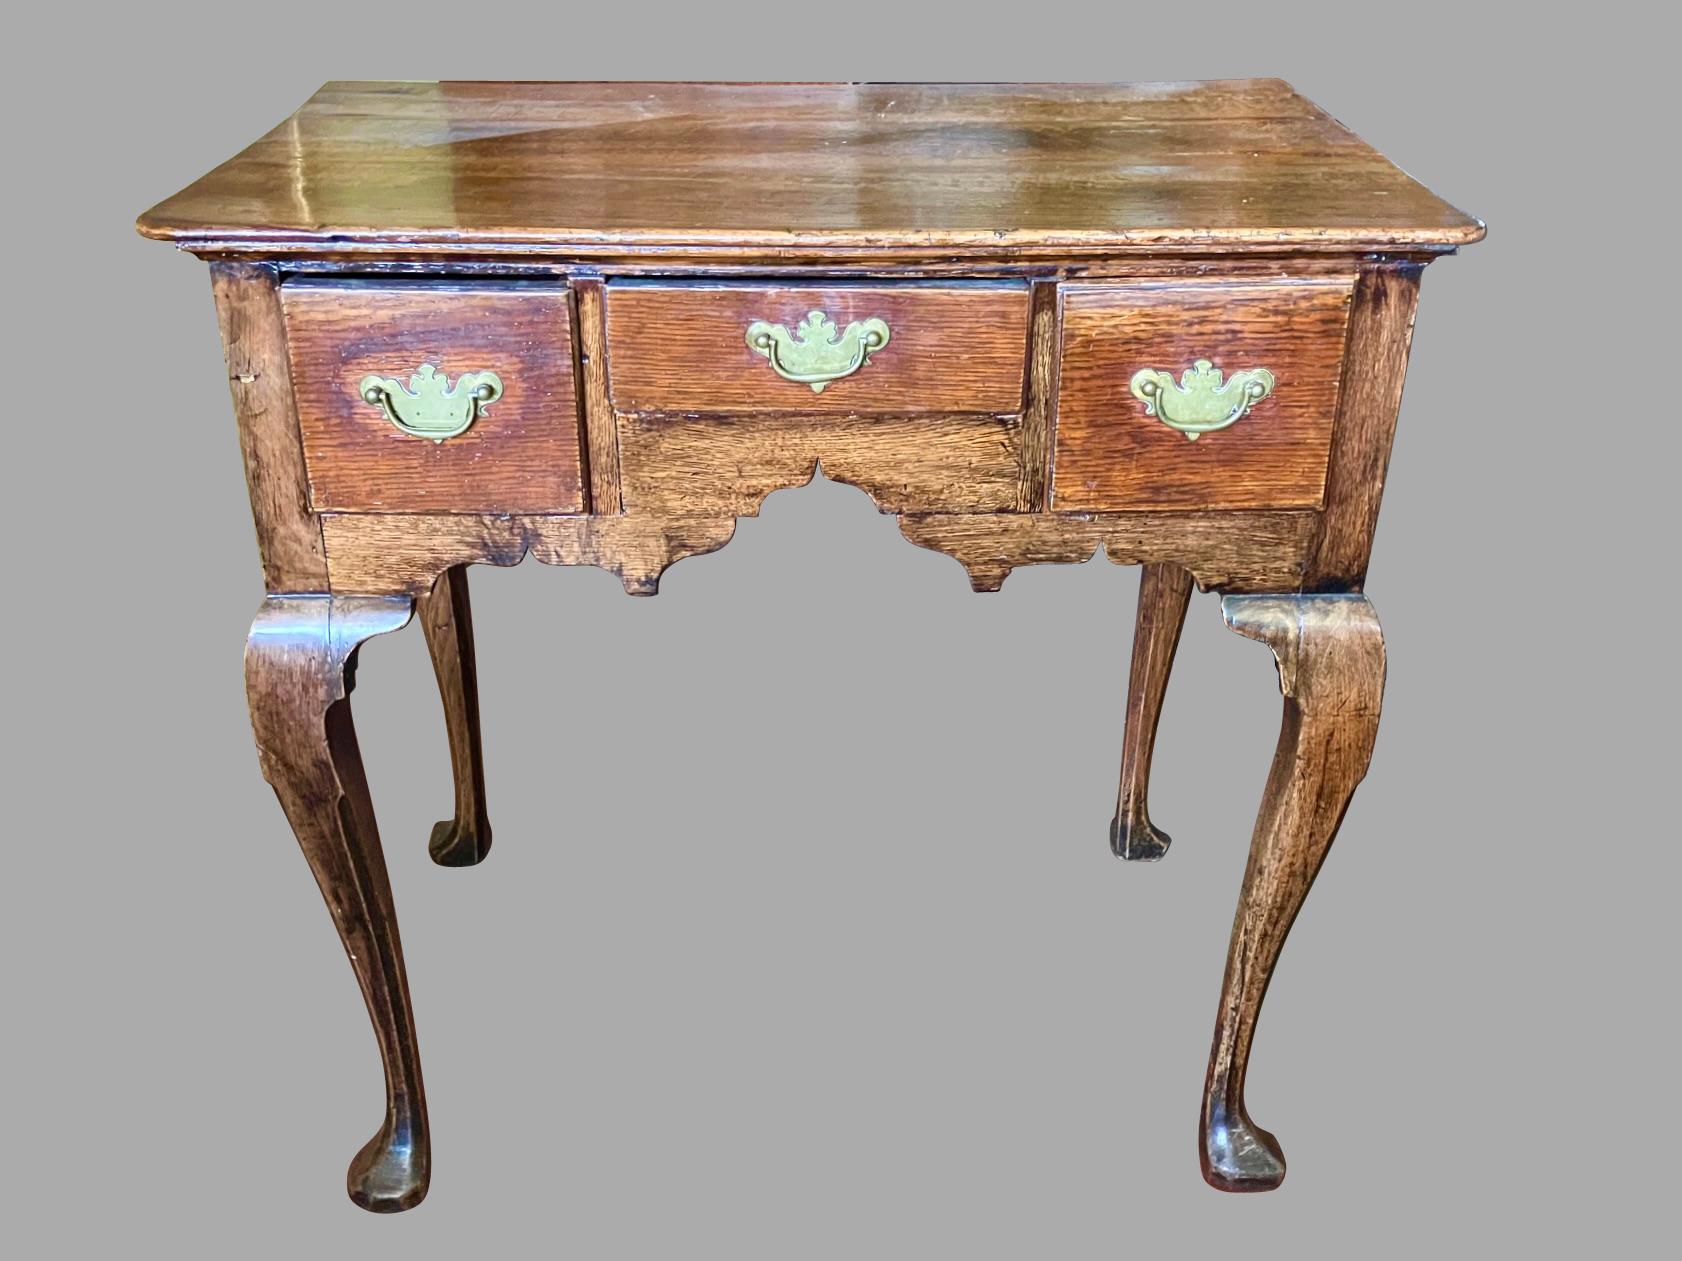 Ein englischer, provinzieller Eichenholztisch aus der George-II-Periode in typischer Form. Die überhängende Platte mit einer geformten Kante befindet sich über 3 eingebauten Schubladen über einer geformten Schürze. Das Stück steht auf